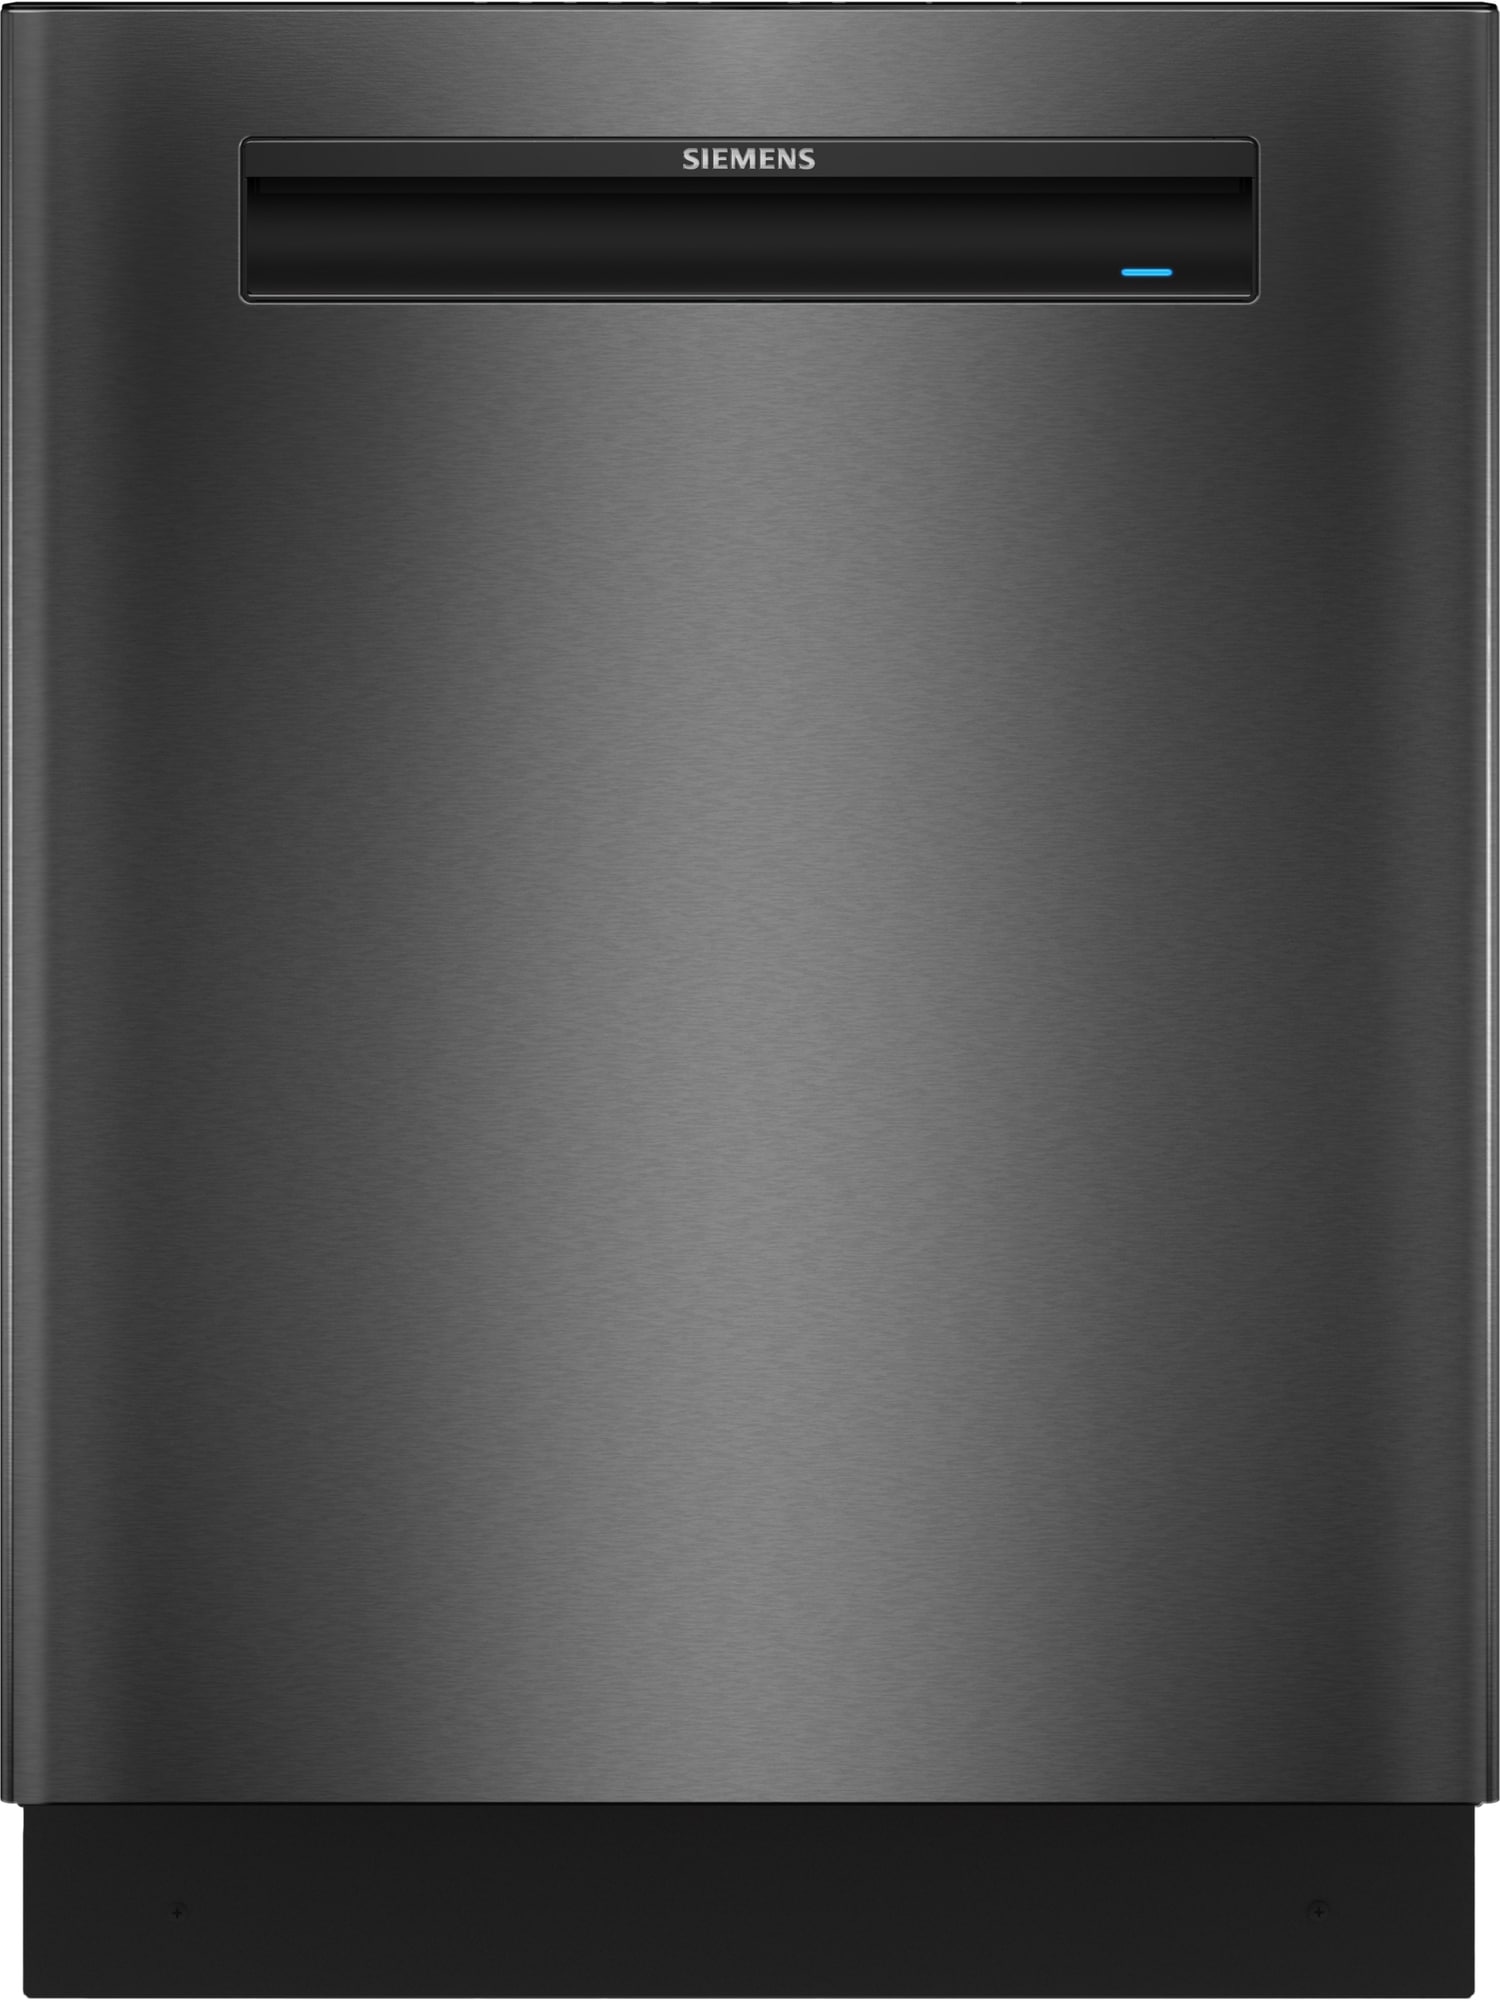 Effektiv og stilfuld opvaskemaskine: Siemens SN13EC78CS, i sort inox.  Perfekt rengøring hver gang.